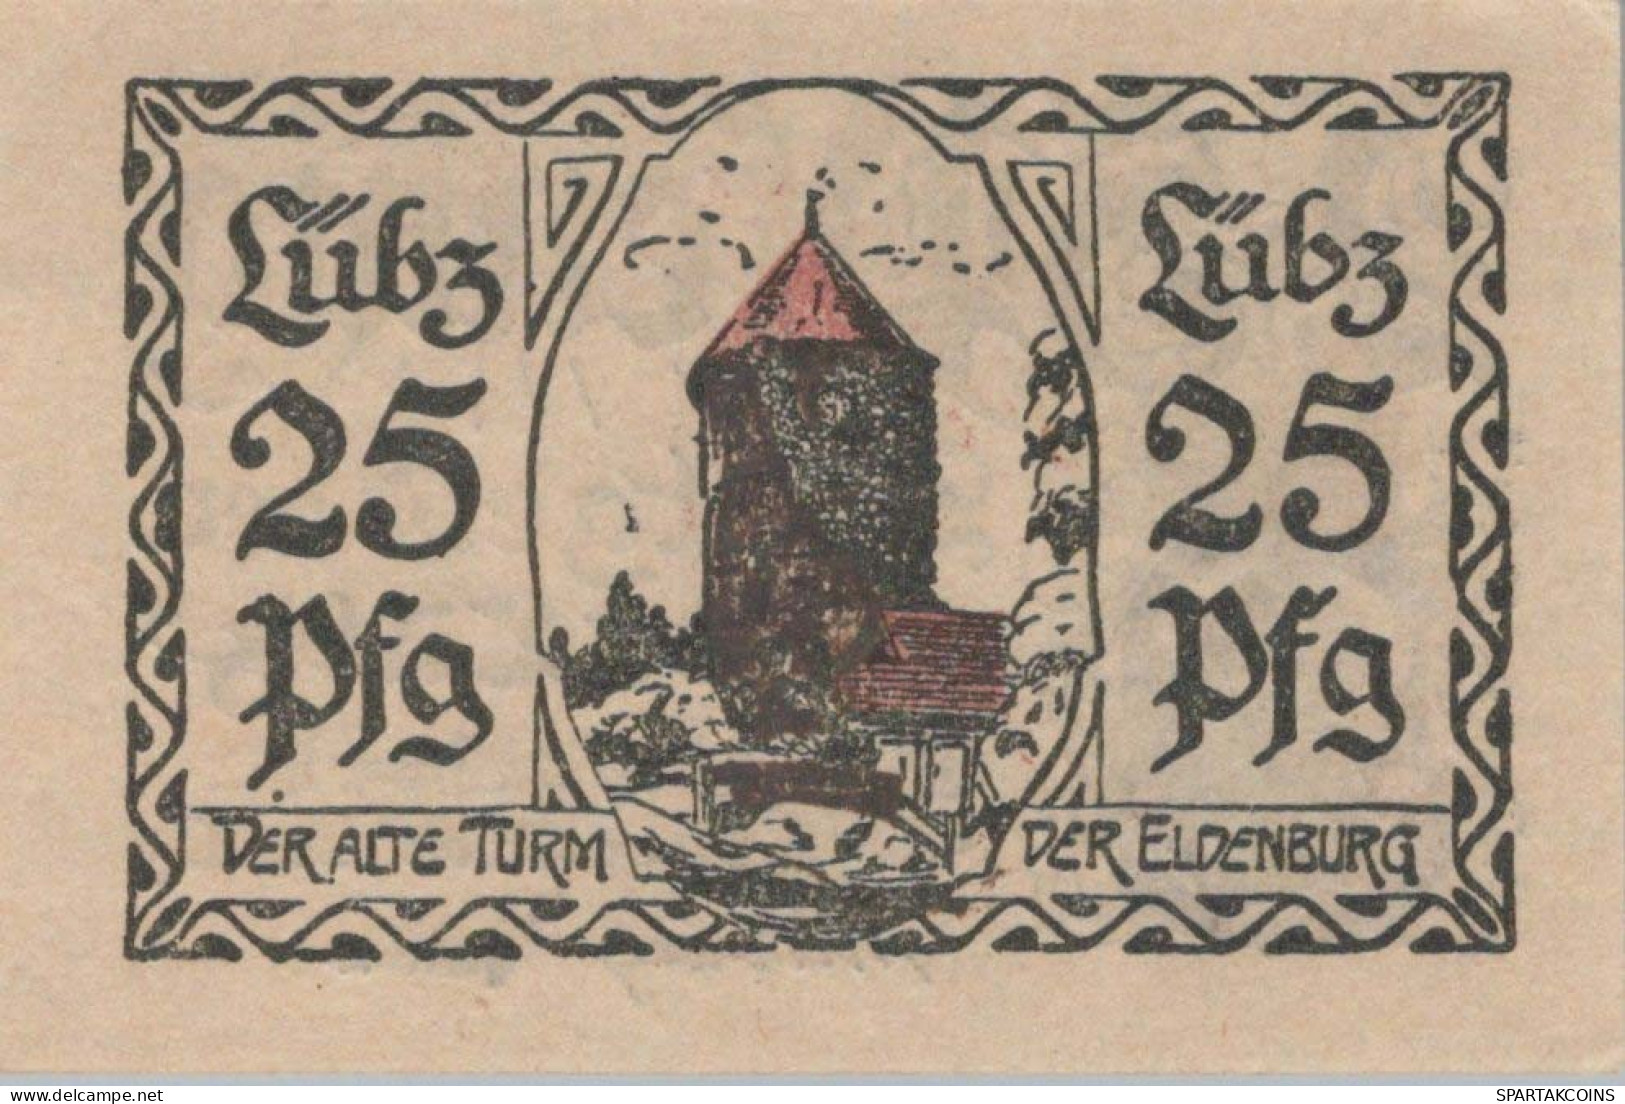 25 PFENNIG 1923 Stadt LÜBZ Mecklenburg-Schwerin UNC DEUTSCHLAND Notgeld #PC624 - [11] Emissions Locales